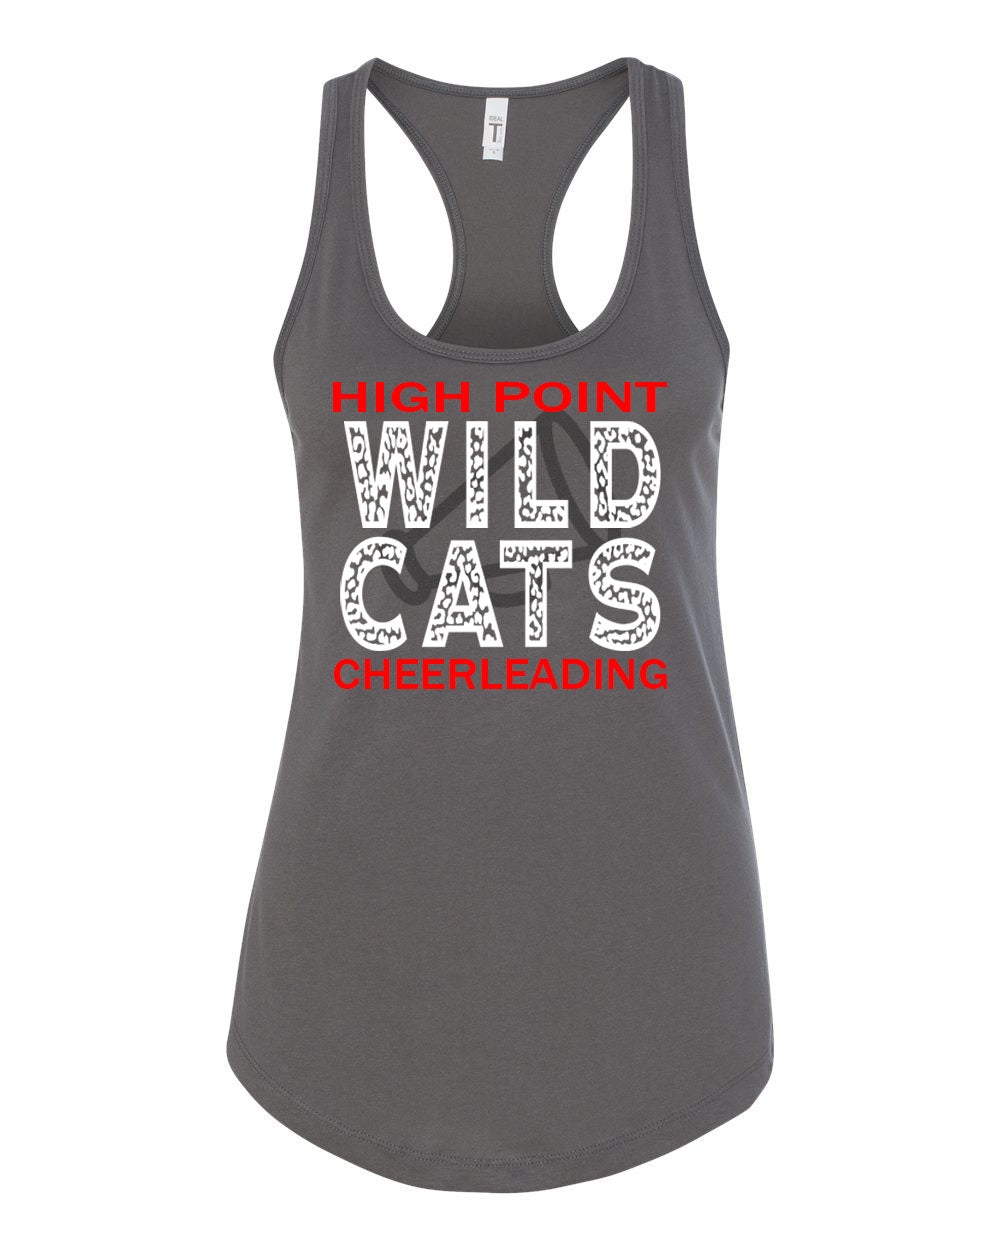 Wildcats Cheer Design 1 Tank Top